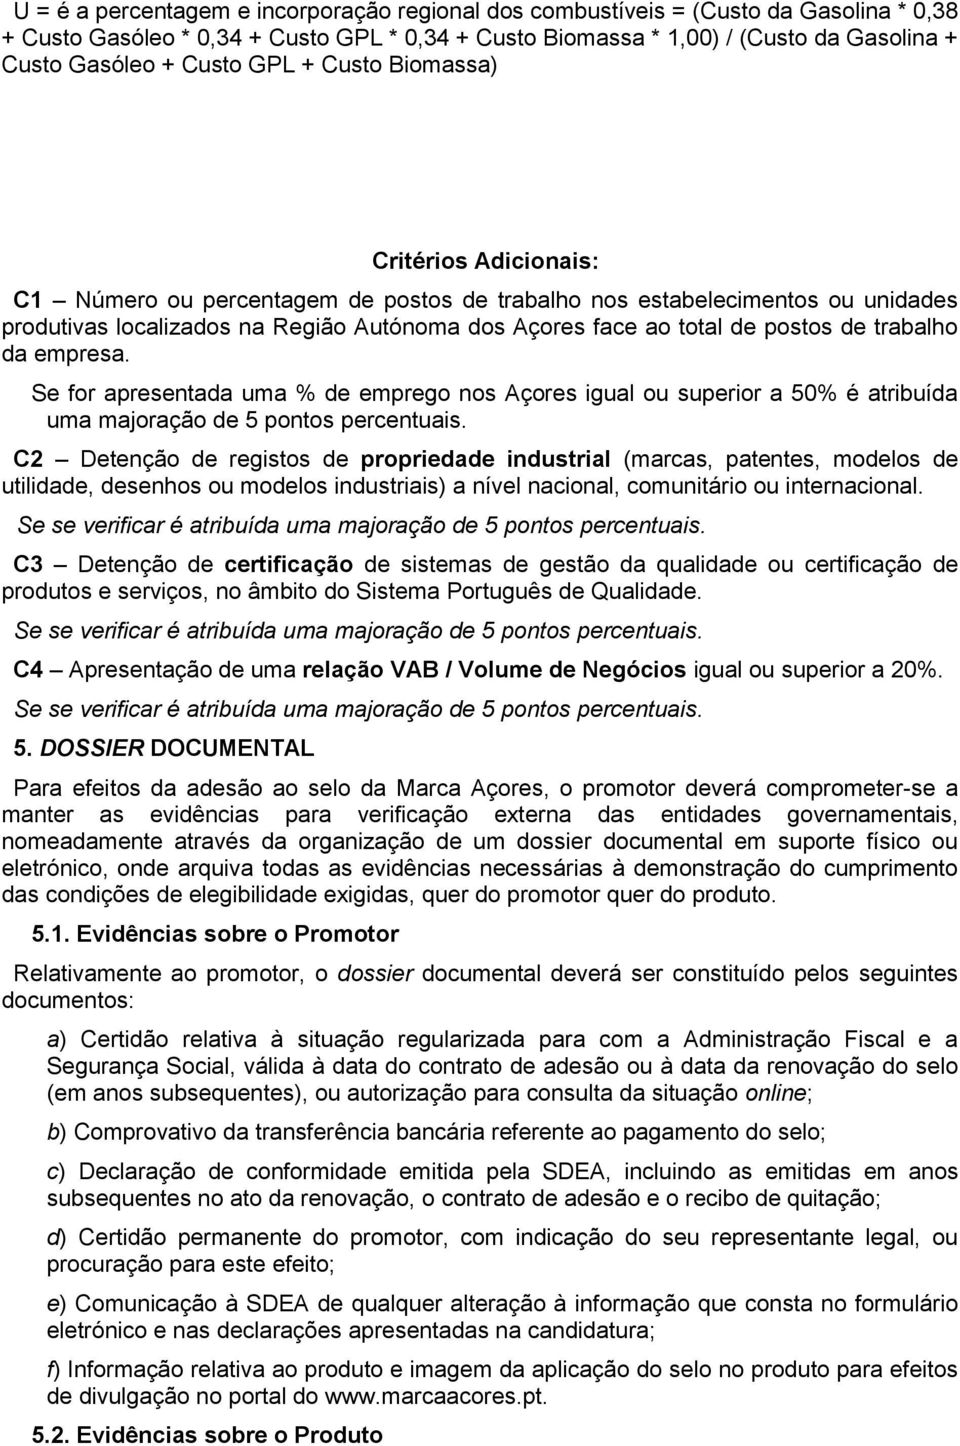 postos de trabalho da empresa. Se for apresentada uma % de emprego nos Açores igual ou superior a 50% é atribuída uma majoração de 5 pontos percentuais.